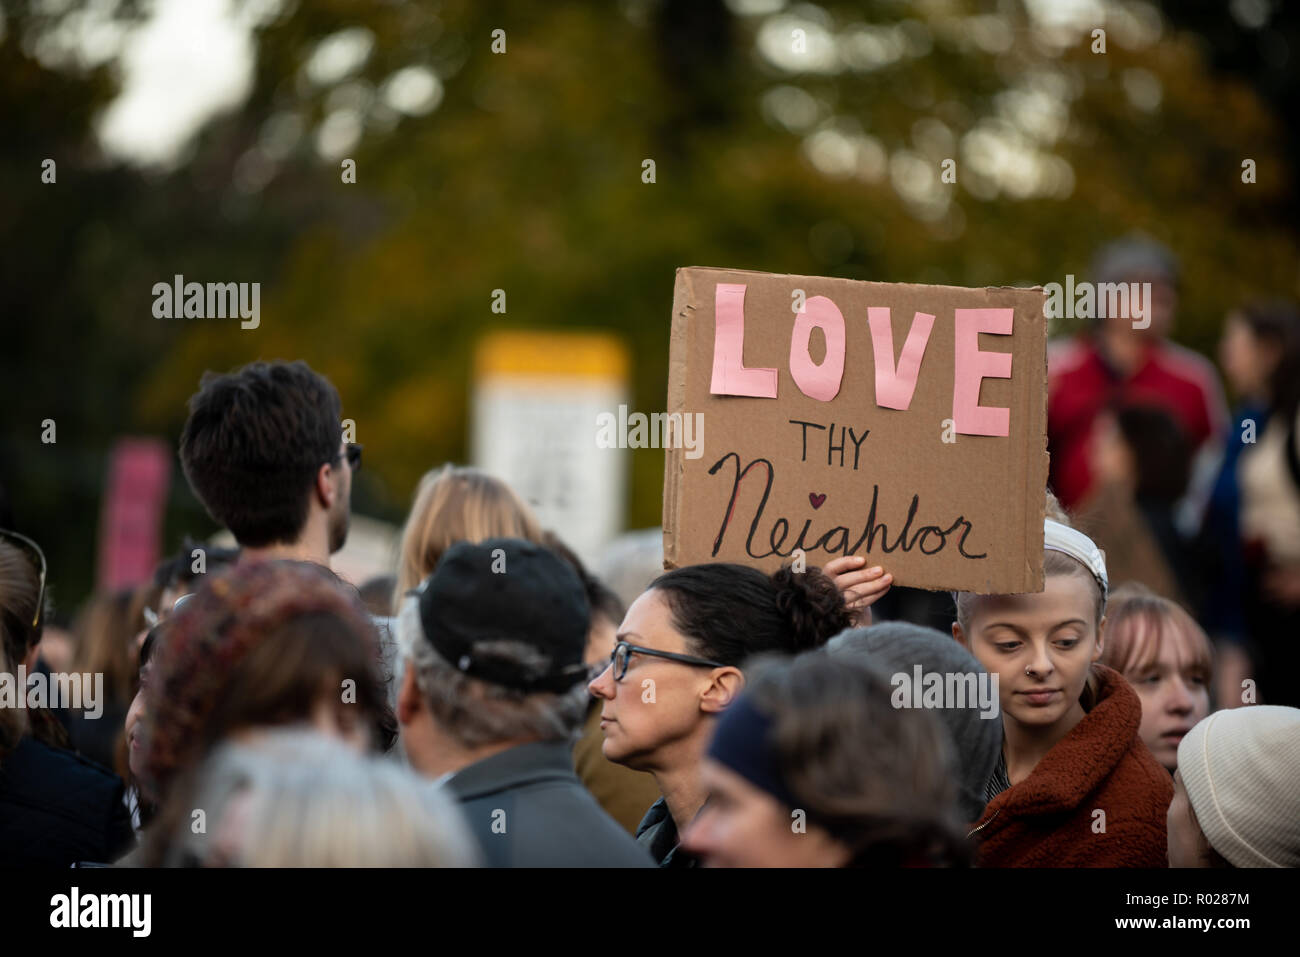 Un cartel visto durante la marcha se lee "amor al prójimo", refiriéndose al Sr. Rogers. Miles de personas participaron en una marcha en Pittsburgh para rendir homenaje a las víctimas que perdieron sus vidas en los árboles de la vida disparando. Foto de stock